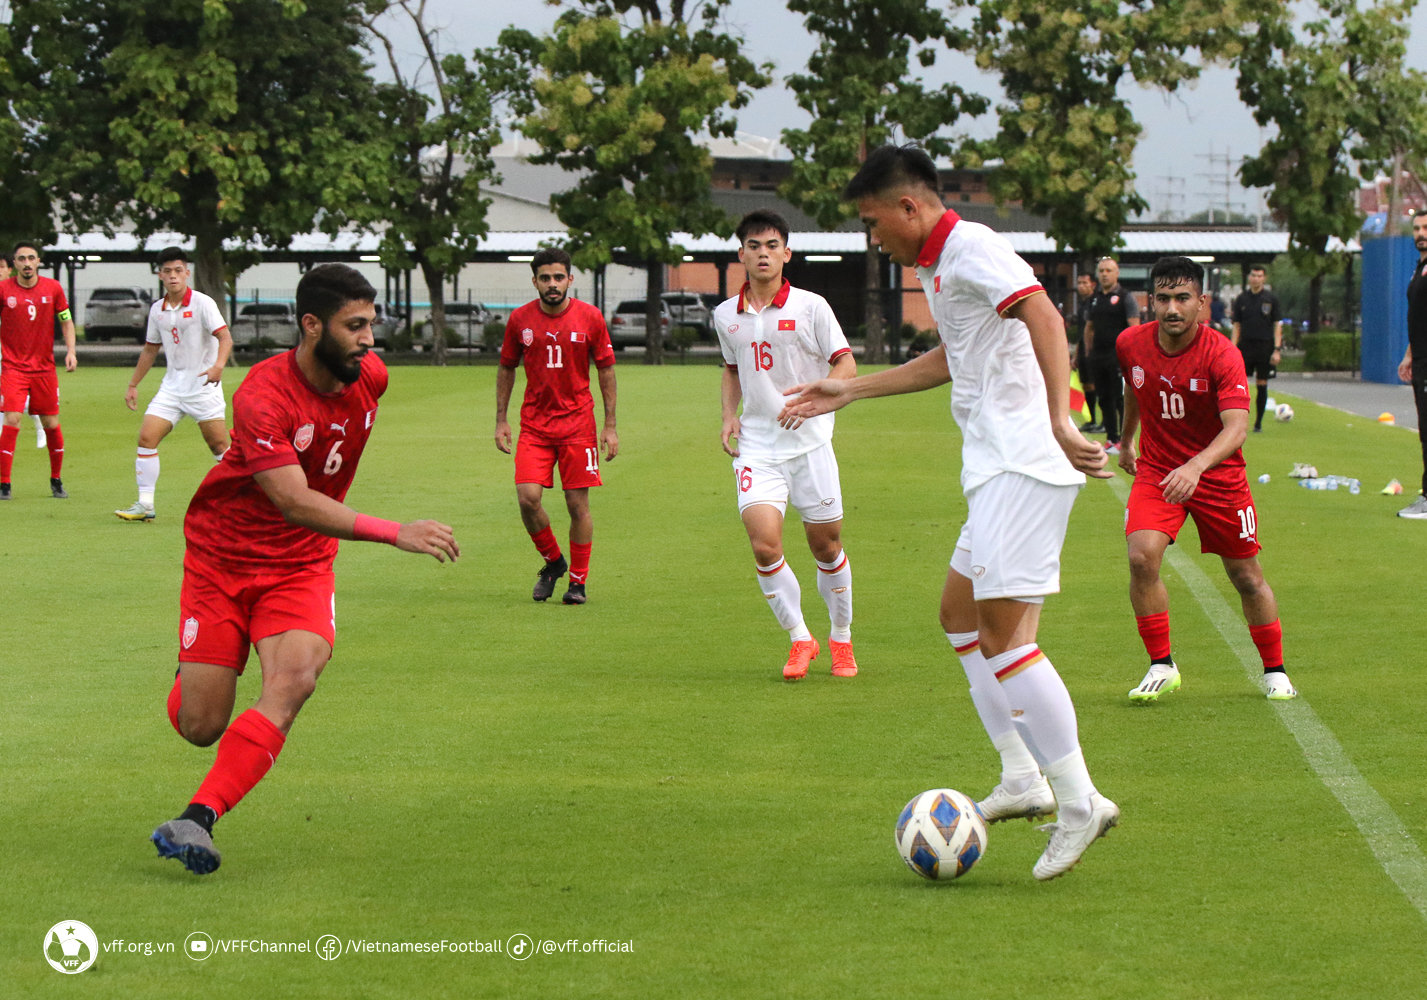 Đội tuyển U.23 Việt Nam sẽ đá trận ra quân gặp U.23 Lào ngày 20.8